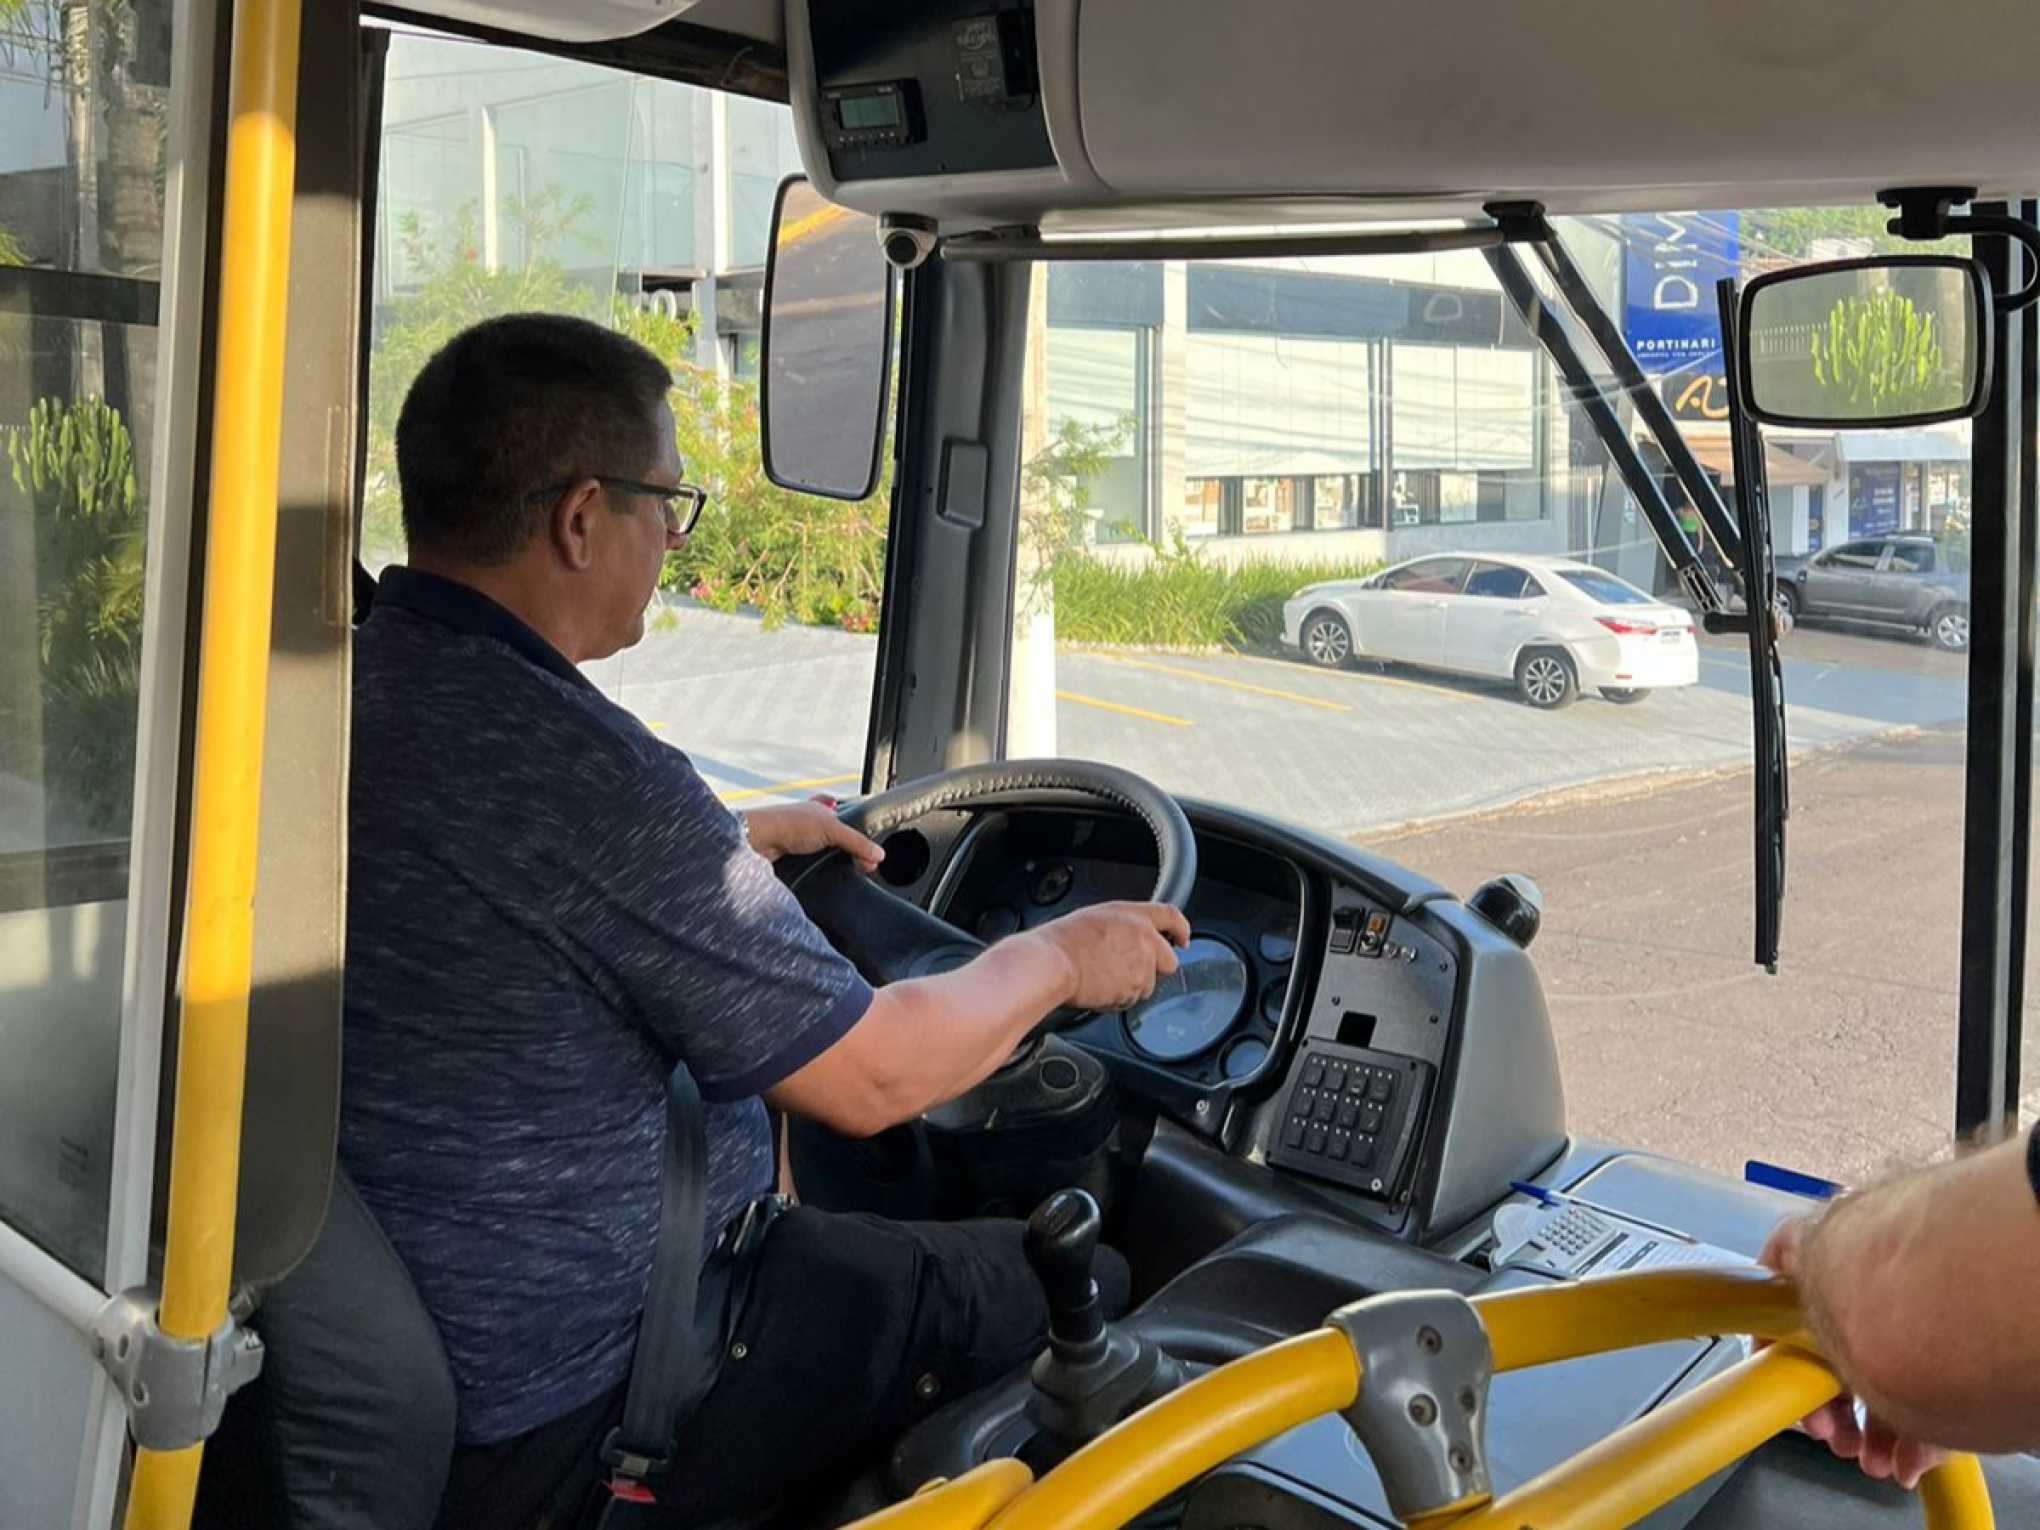 NOVO HAMBURGO: Saiba como está o processo seletivo para motoristas da nova empresa do transporte público